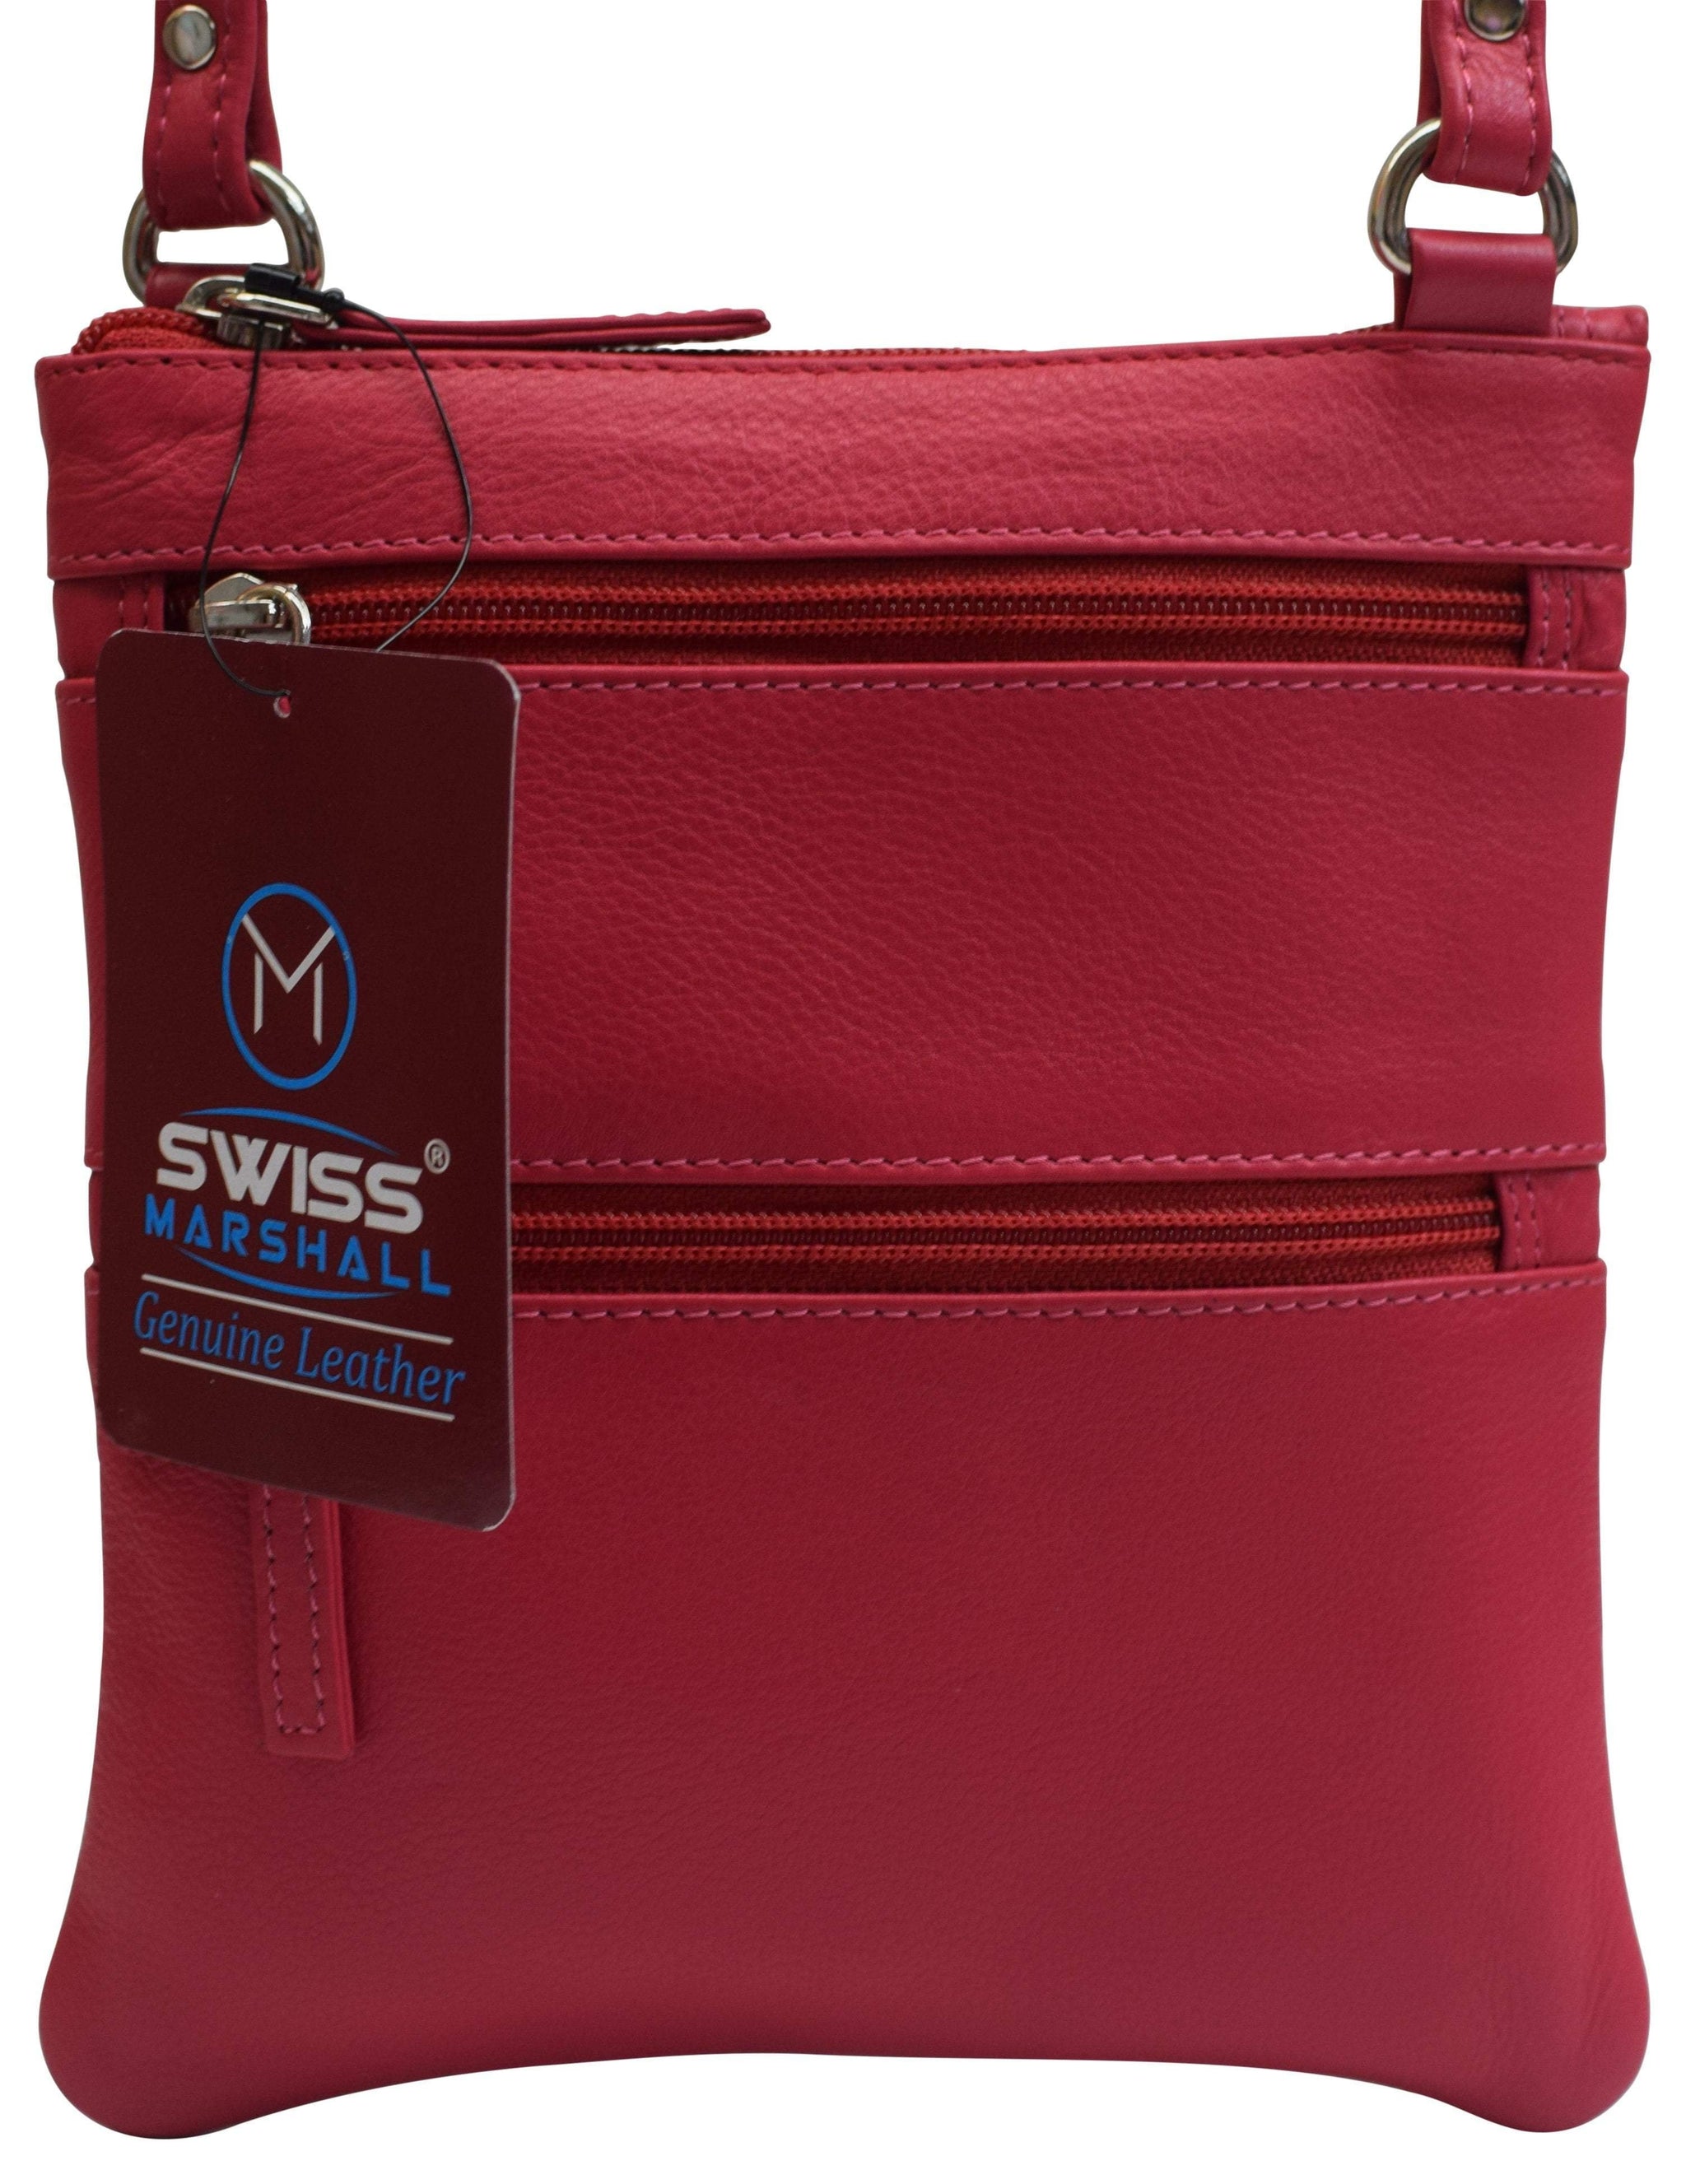 Buy Shoulder Bag for Women Small Shoulder Bag Handbags Fashion Leather  Purses Shoulder Bag Online at desertcartINDIA